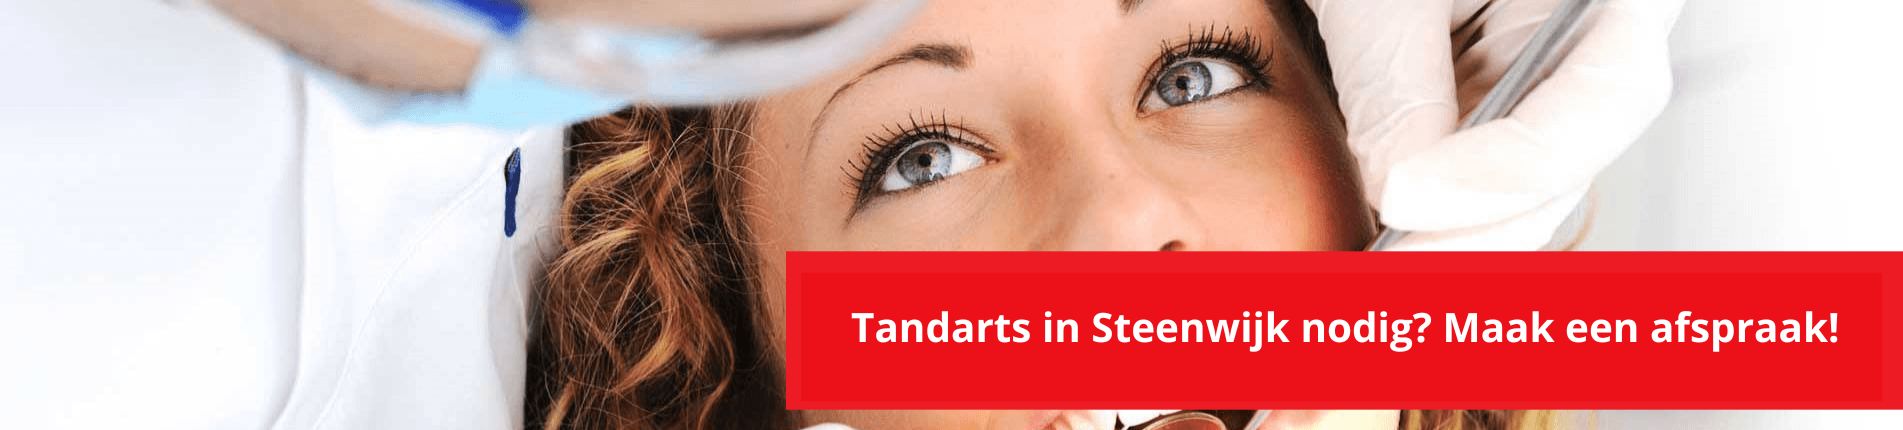 Tandarts in Steenwijk